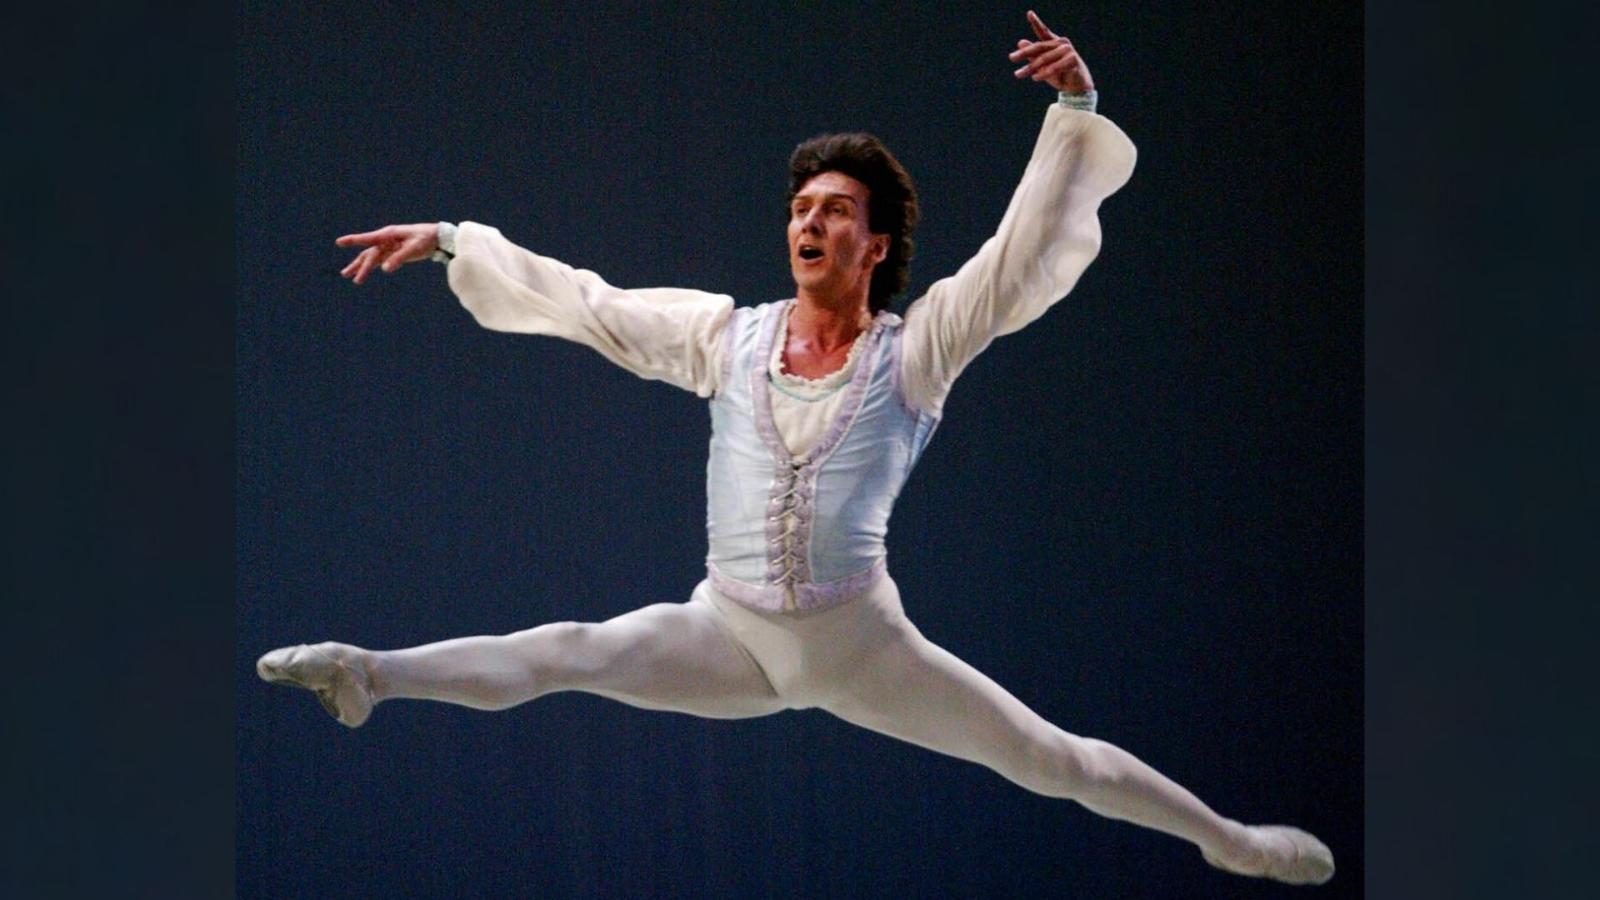 Julio Bocca narra cómo fue haber sido el mejor bailarín del mundo | Video | CNN